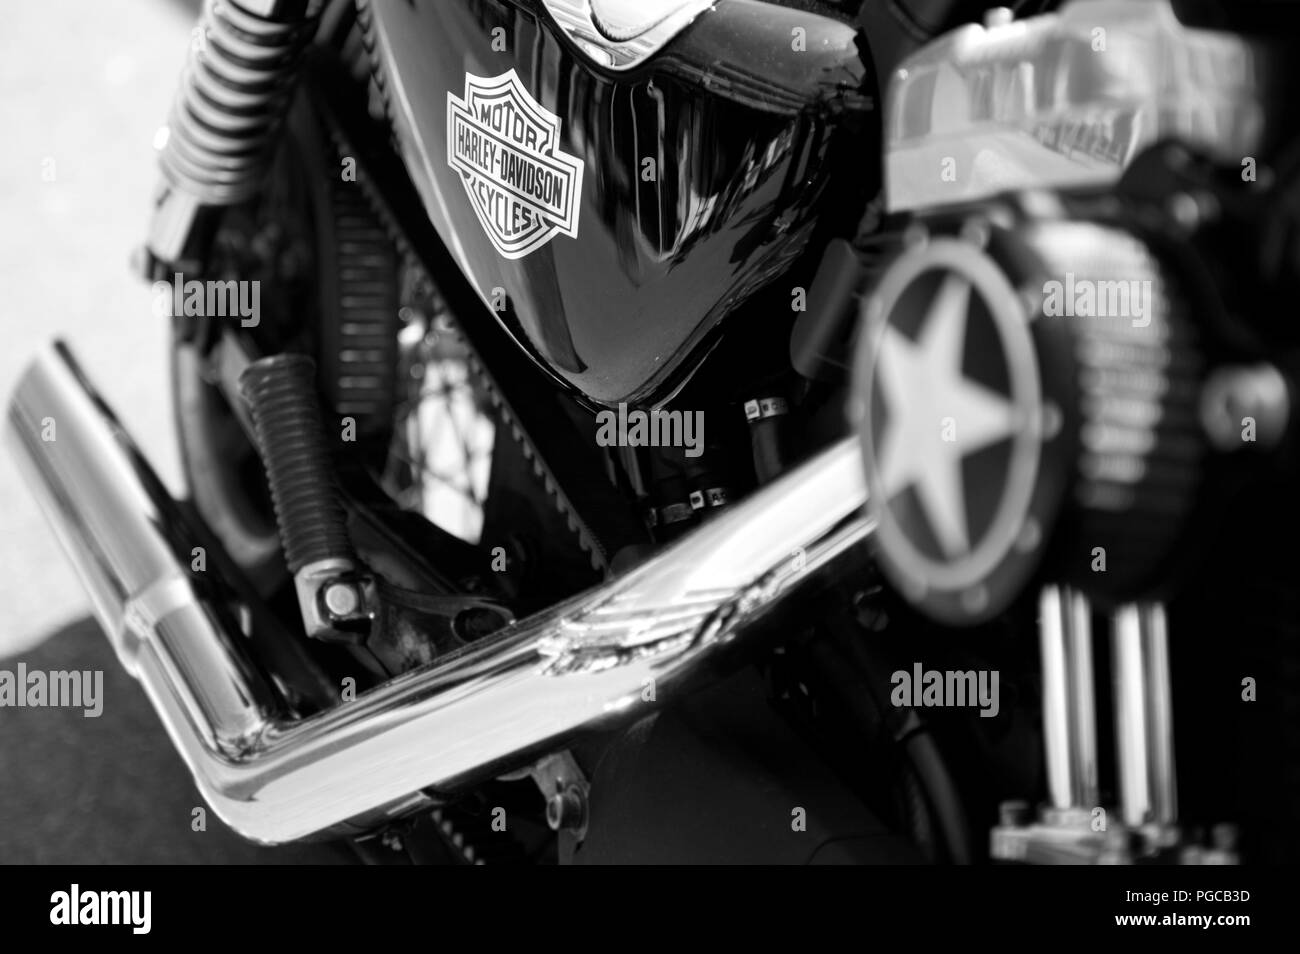 motor bike Stock Photo